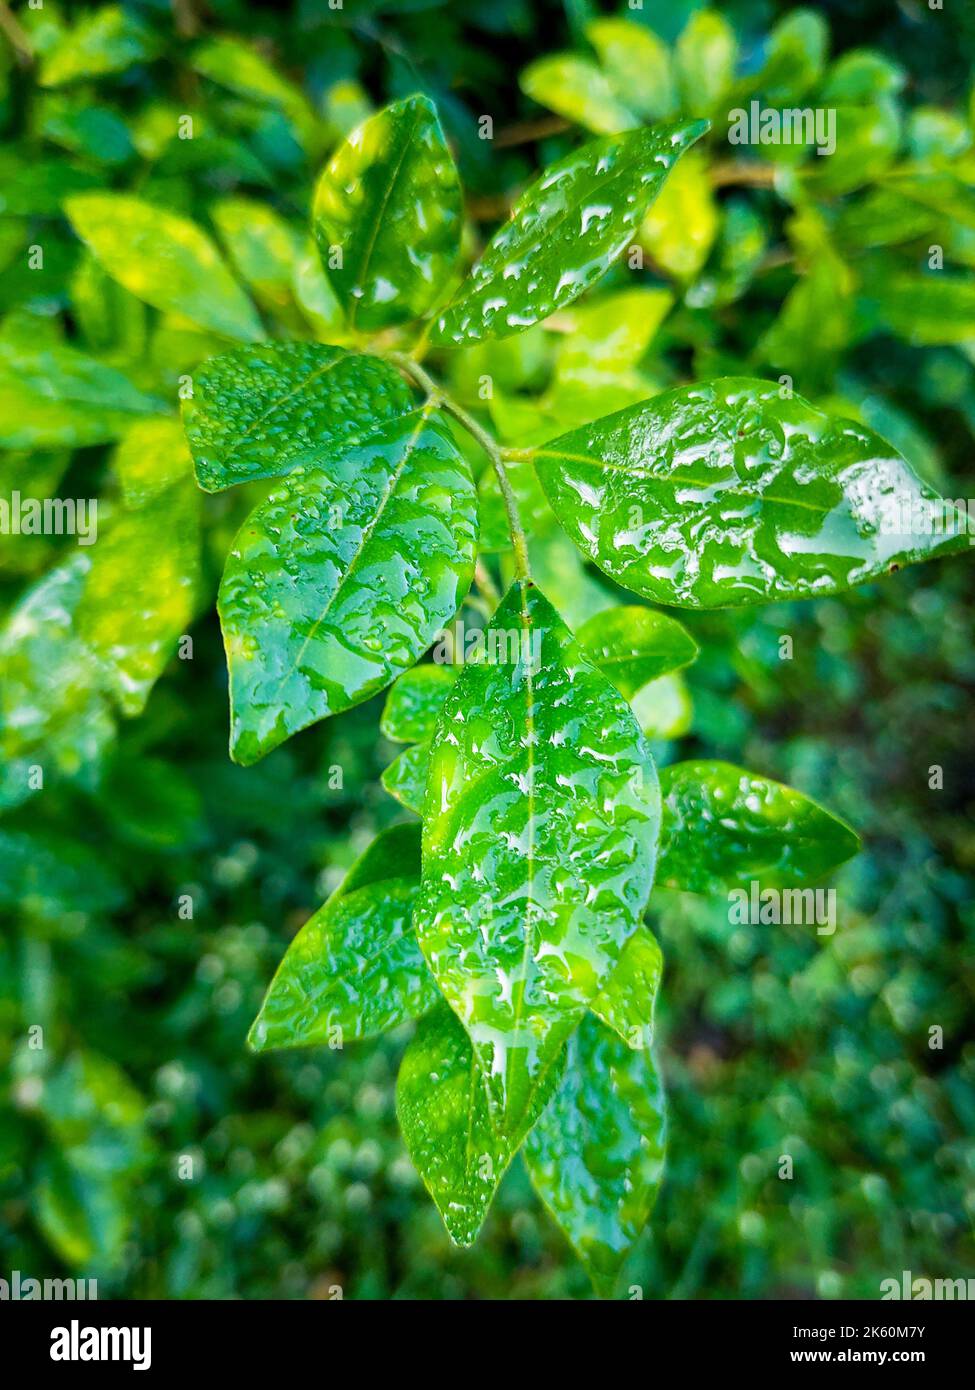 Feuilles d'arbre à la chaux humide (Djeruk limau) pendant la saison de la mousson en Inde. Dehradun Uttarakhand Inde. Banque D'Images